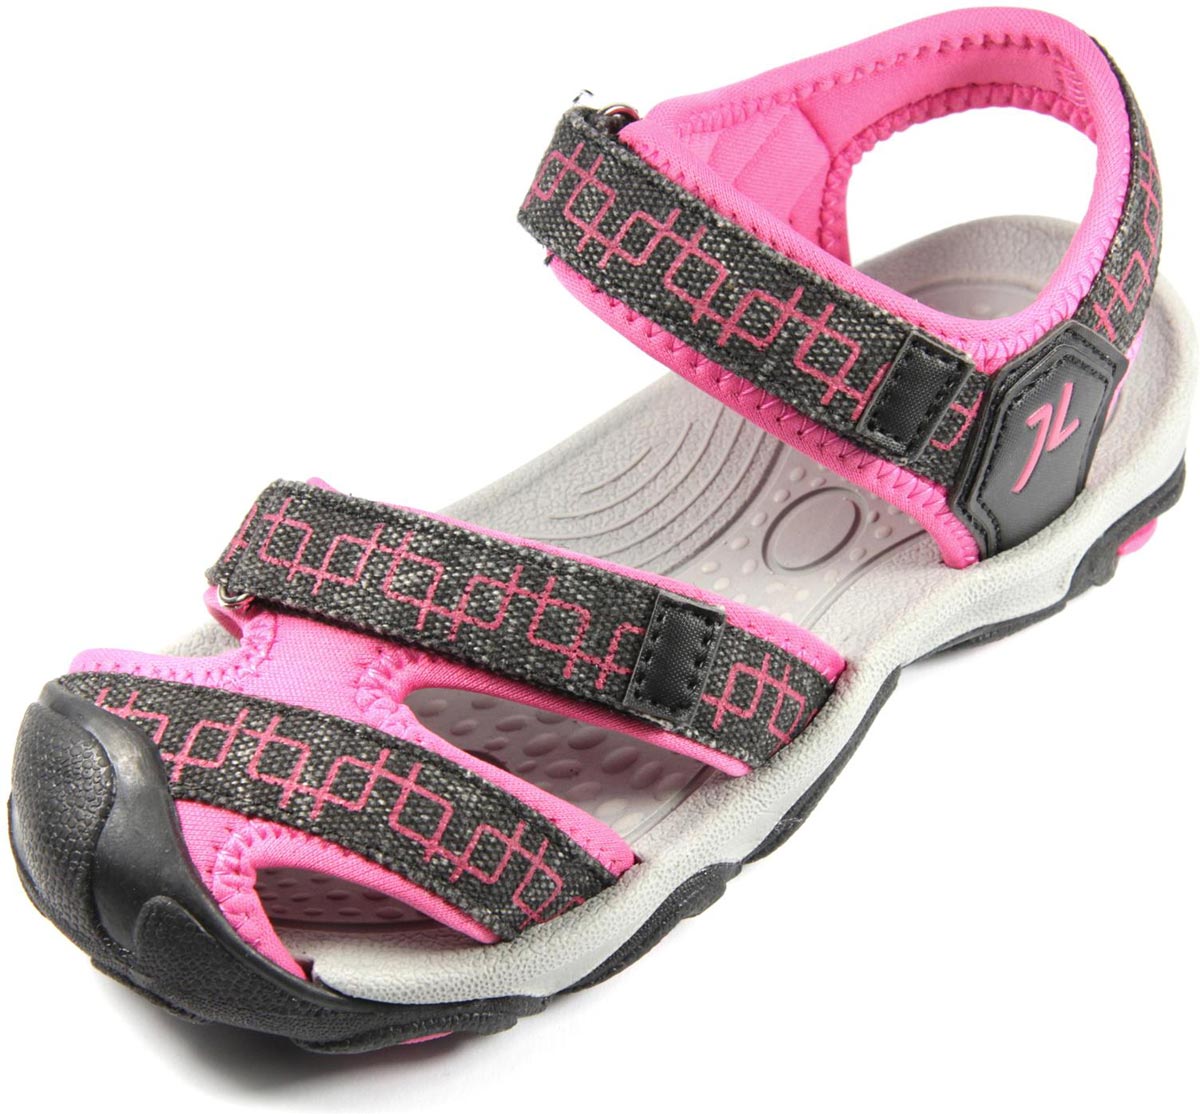 LANA - Sandale pentru fete